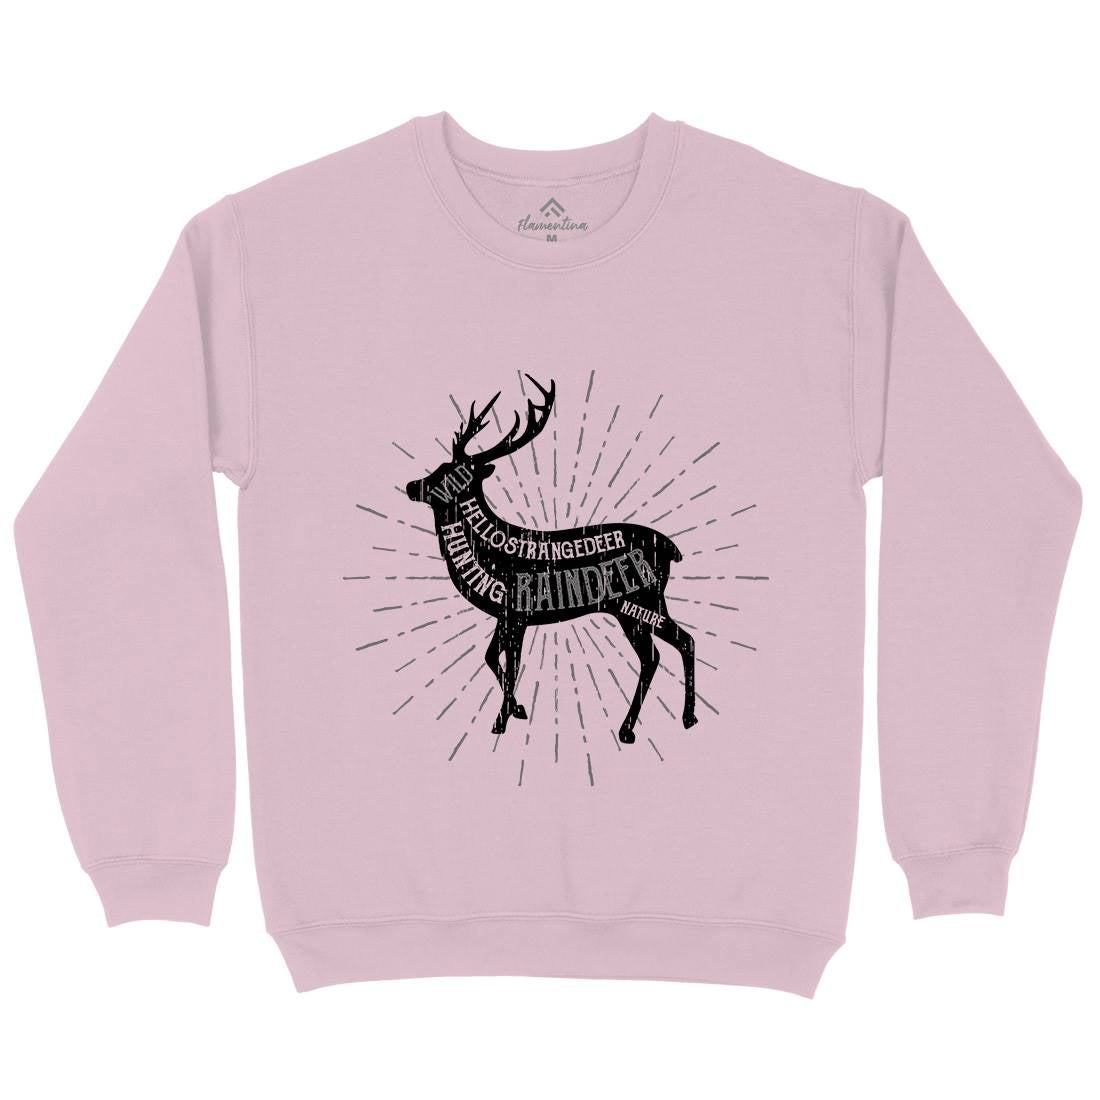 Deer Reindeer Kids Crew Neck Sweatshirt Animals B707